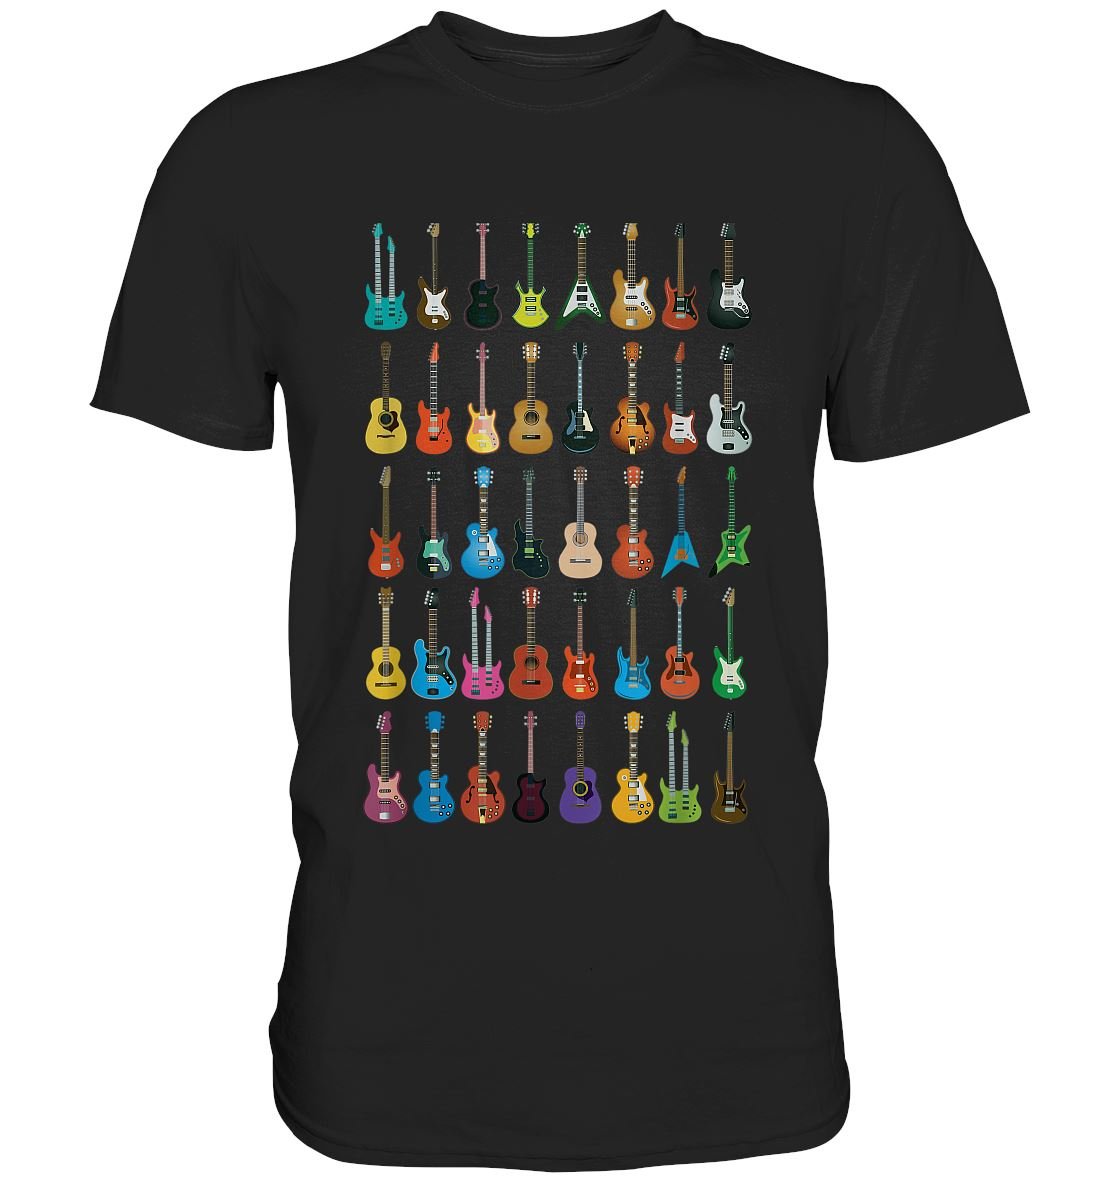 Verschiedene Gitarren - Premium Shirt - BINYA